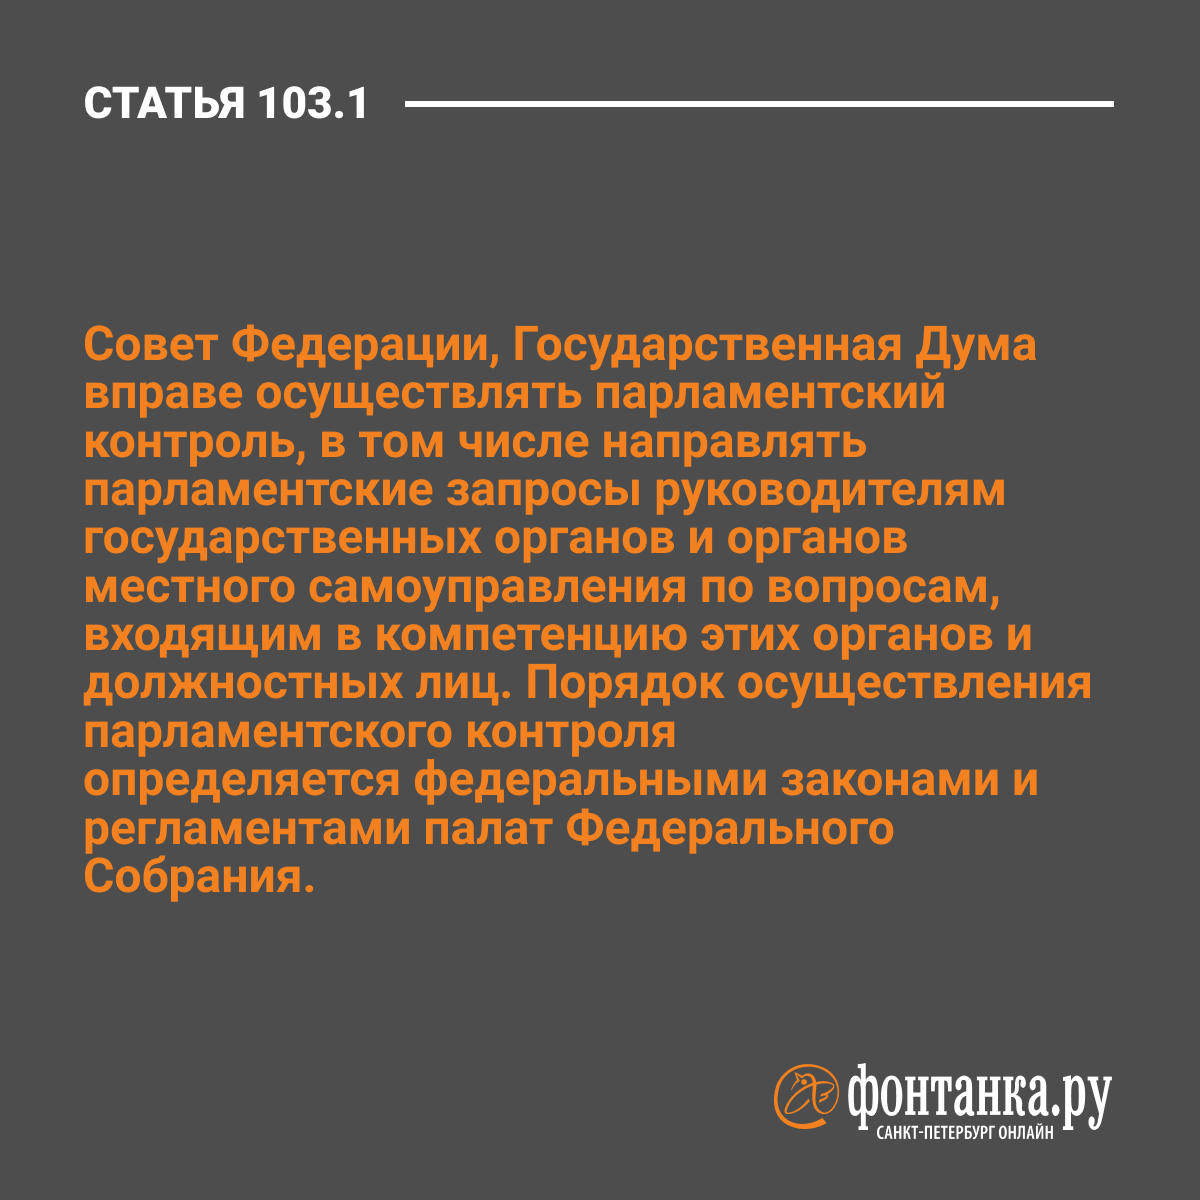 Изменение статьи 80. Статья 19 Конституции РФ.